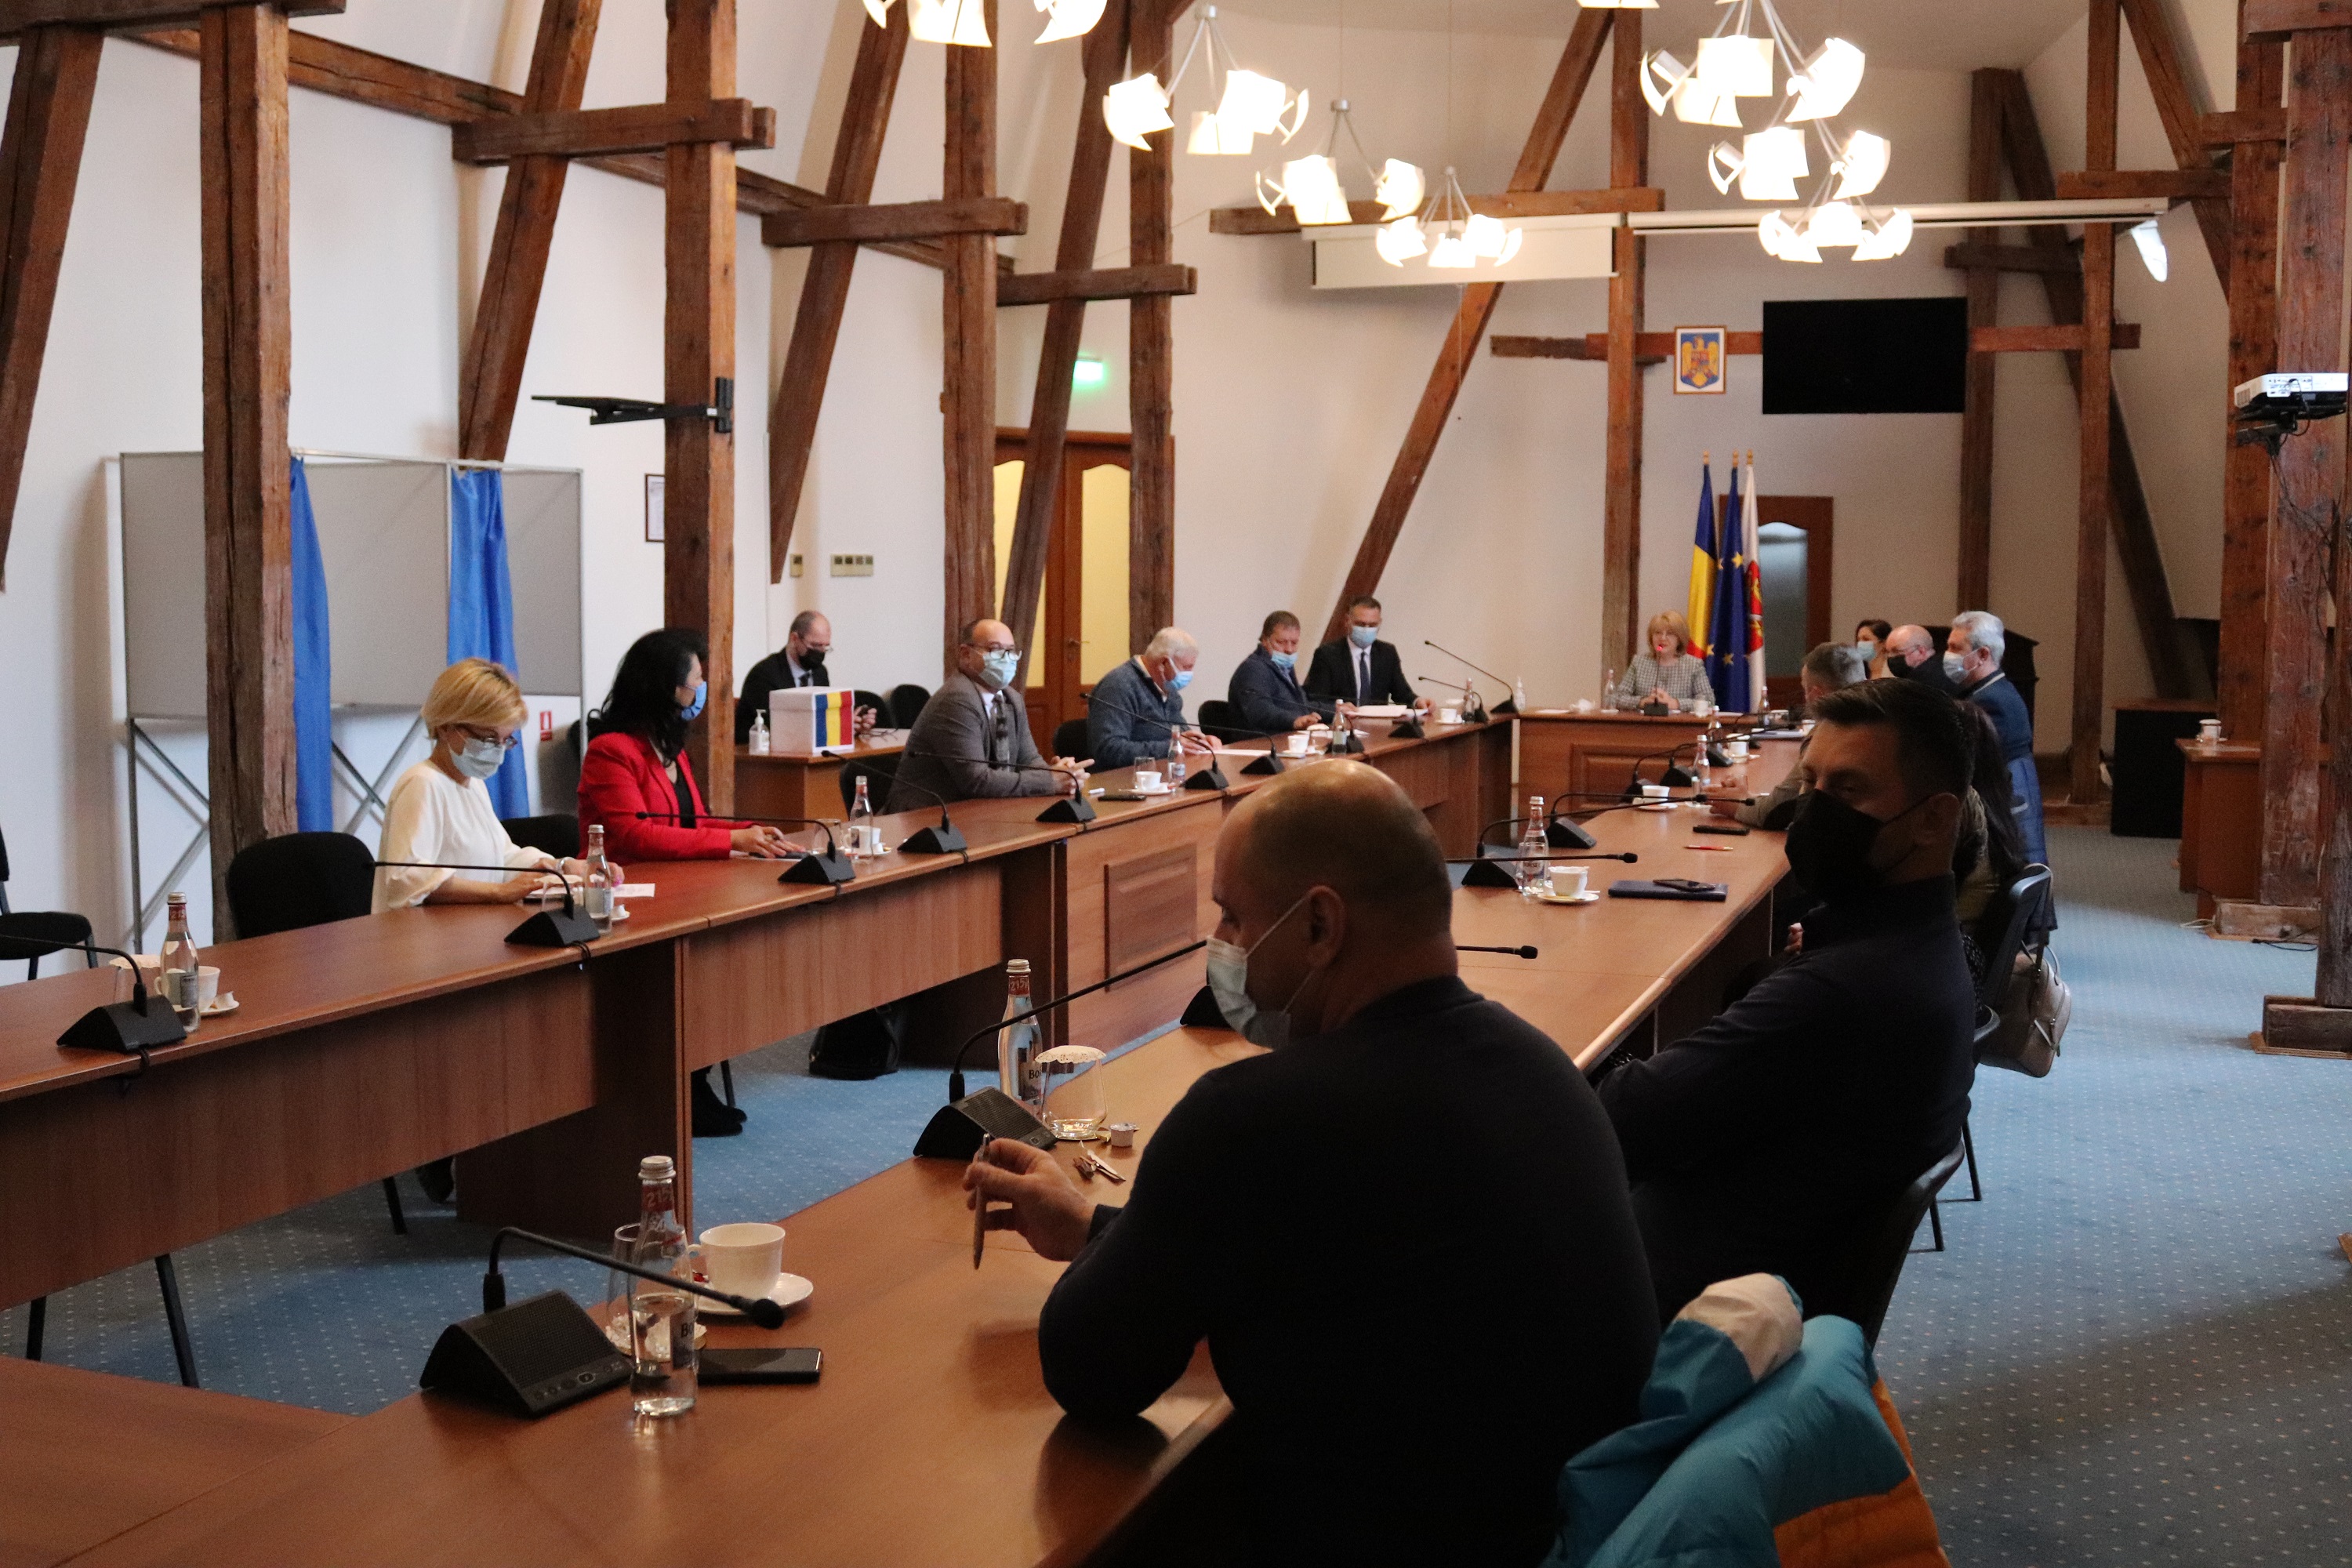 Asociația de Dezvoltare Intercomunitară Transport Metropolitan Sibiu are statut, act constitutiv, președinte și consiliu director